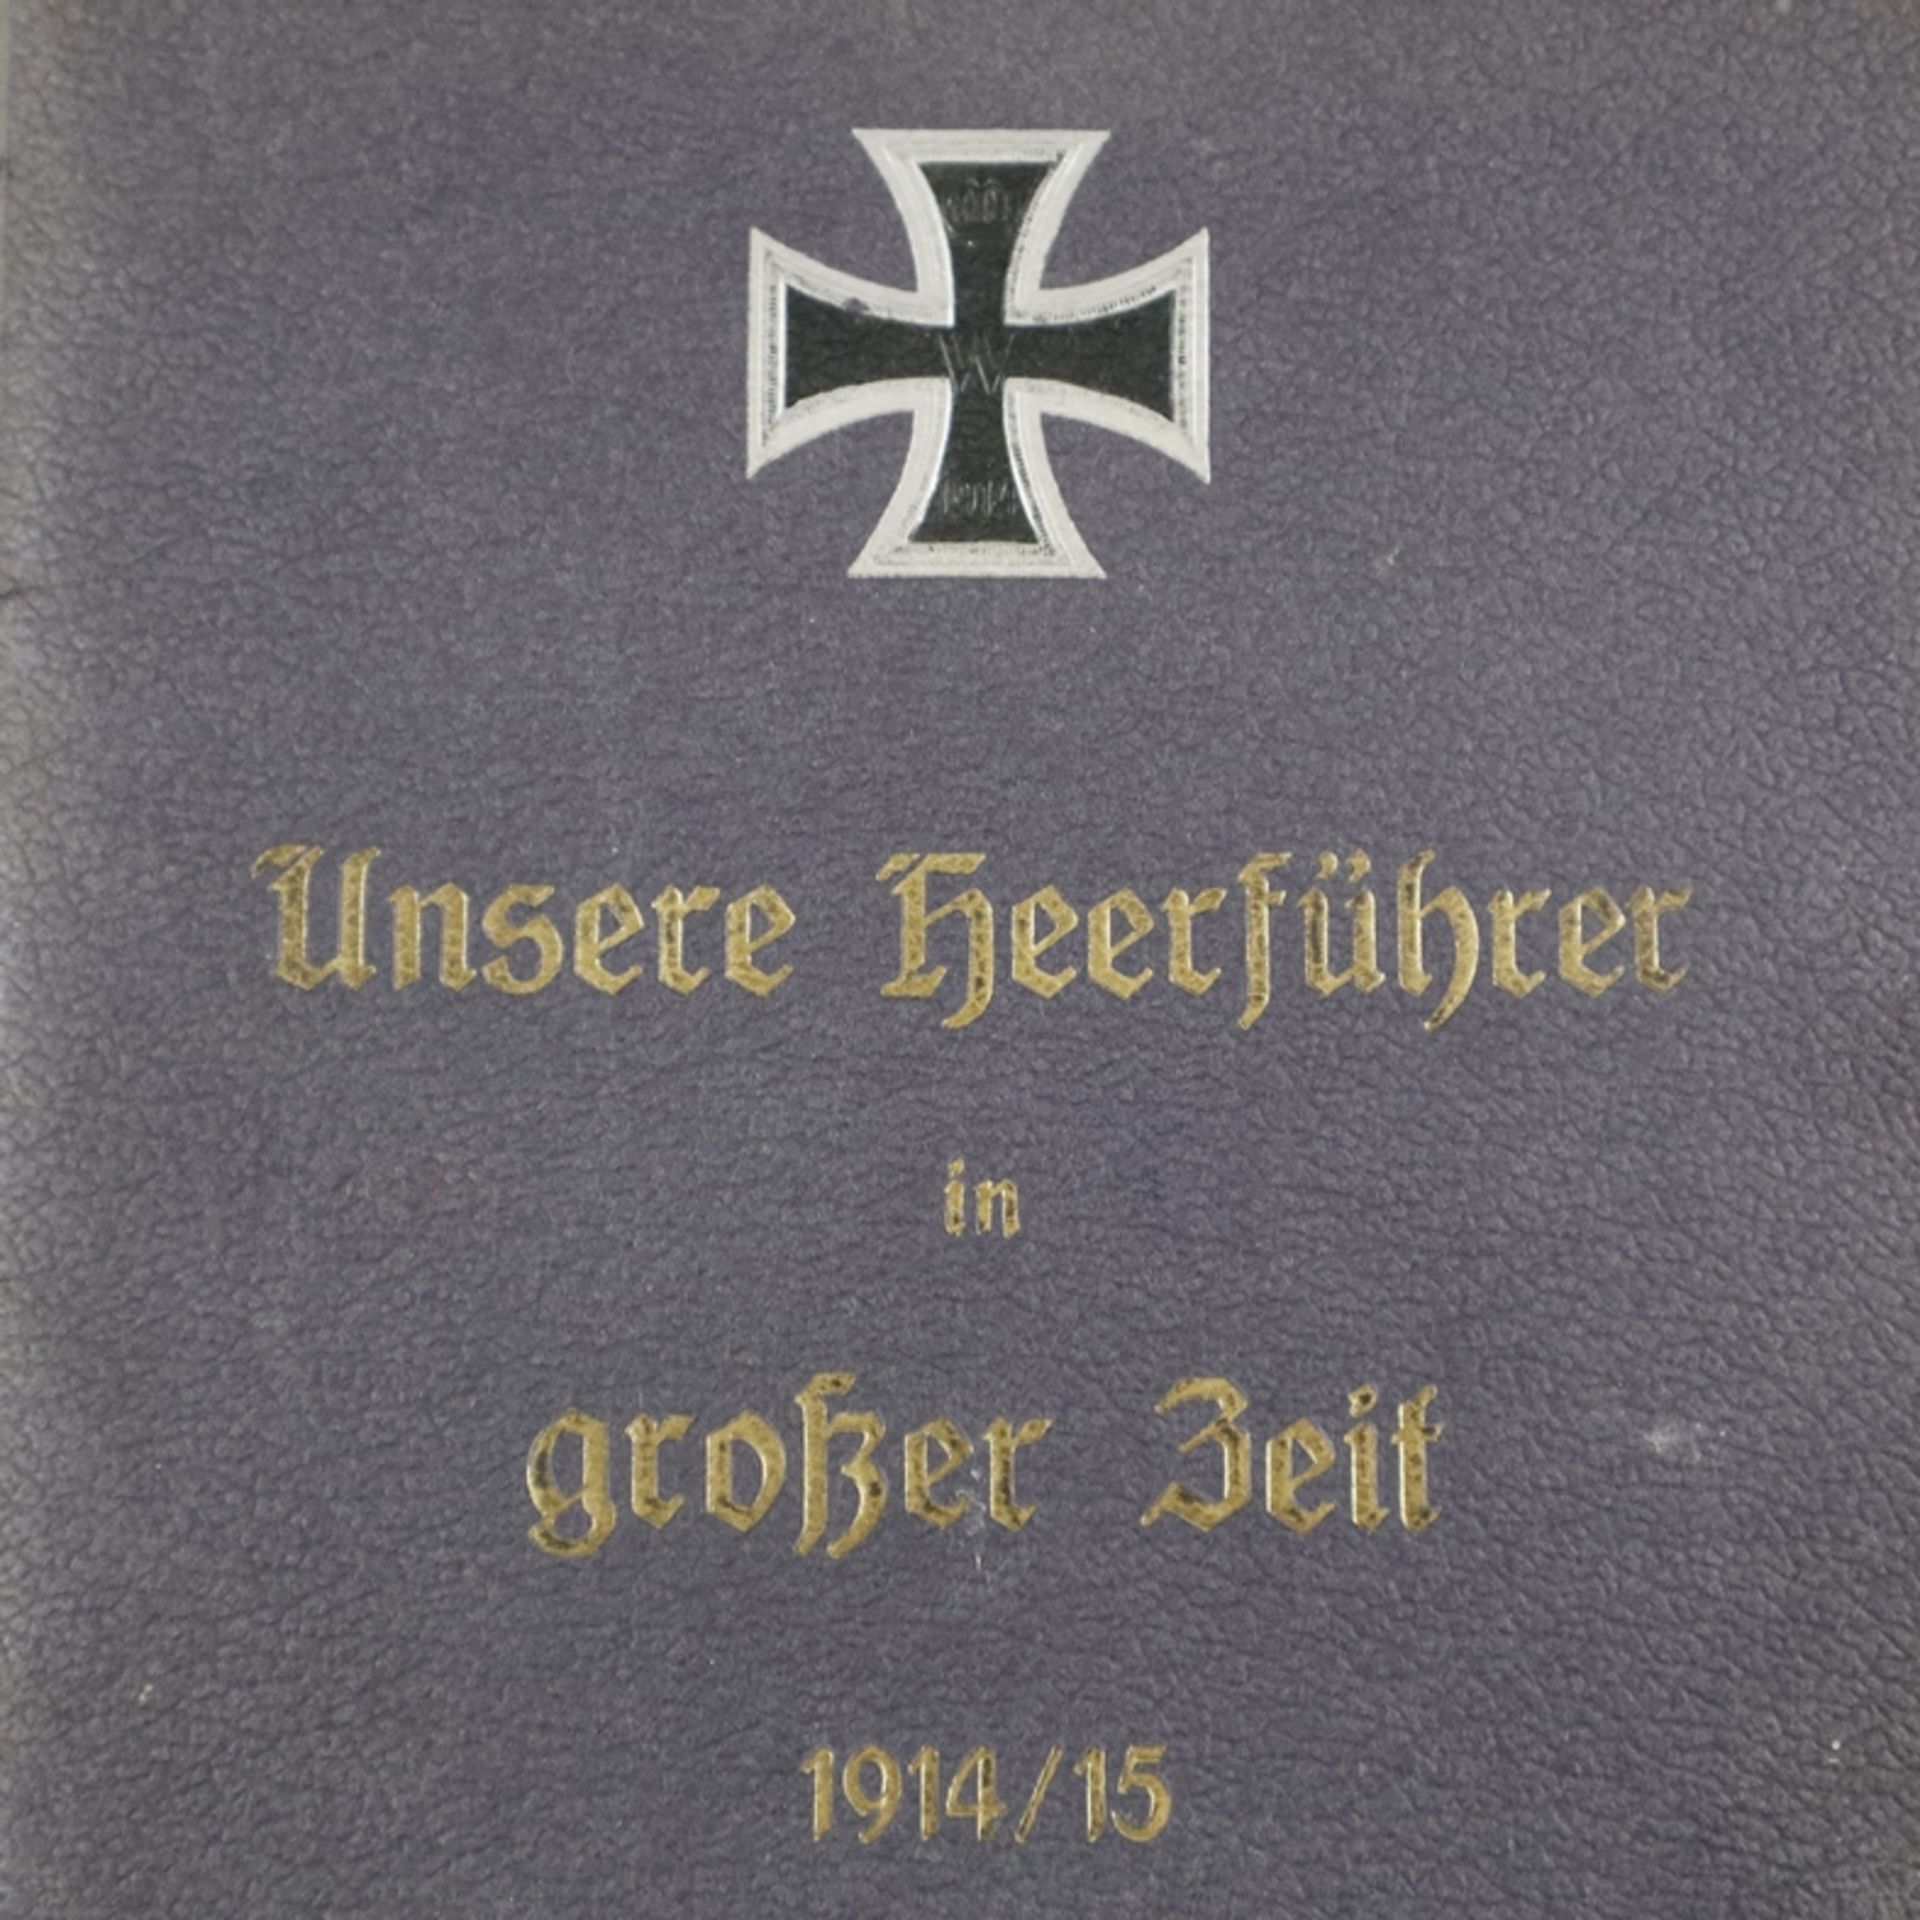 "Unsere Heerführer in großer Zeit 1914/15" - Mappe mit Portraits Kaiser Wilhelms II. und acht Gener - Image 2 of 7